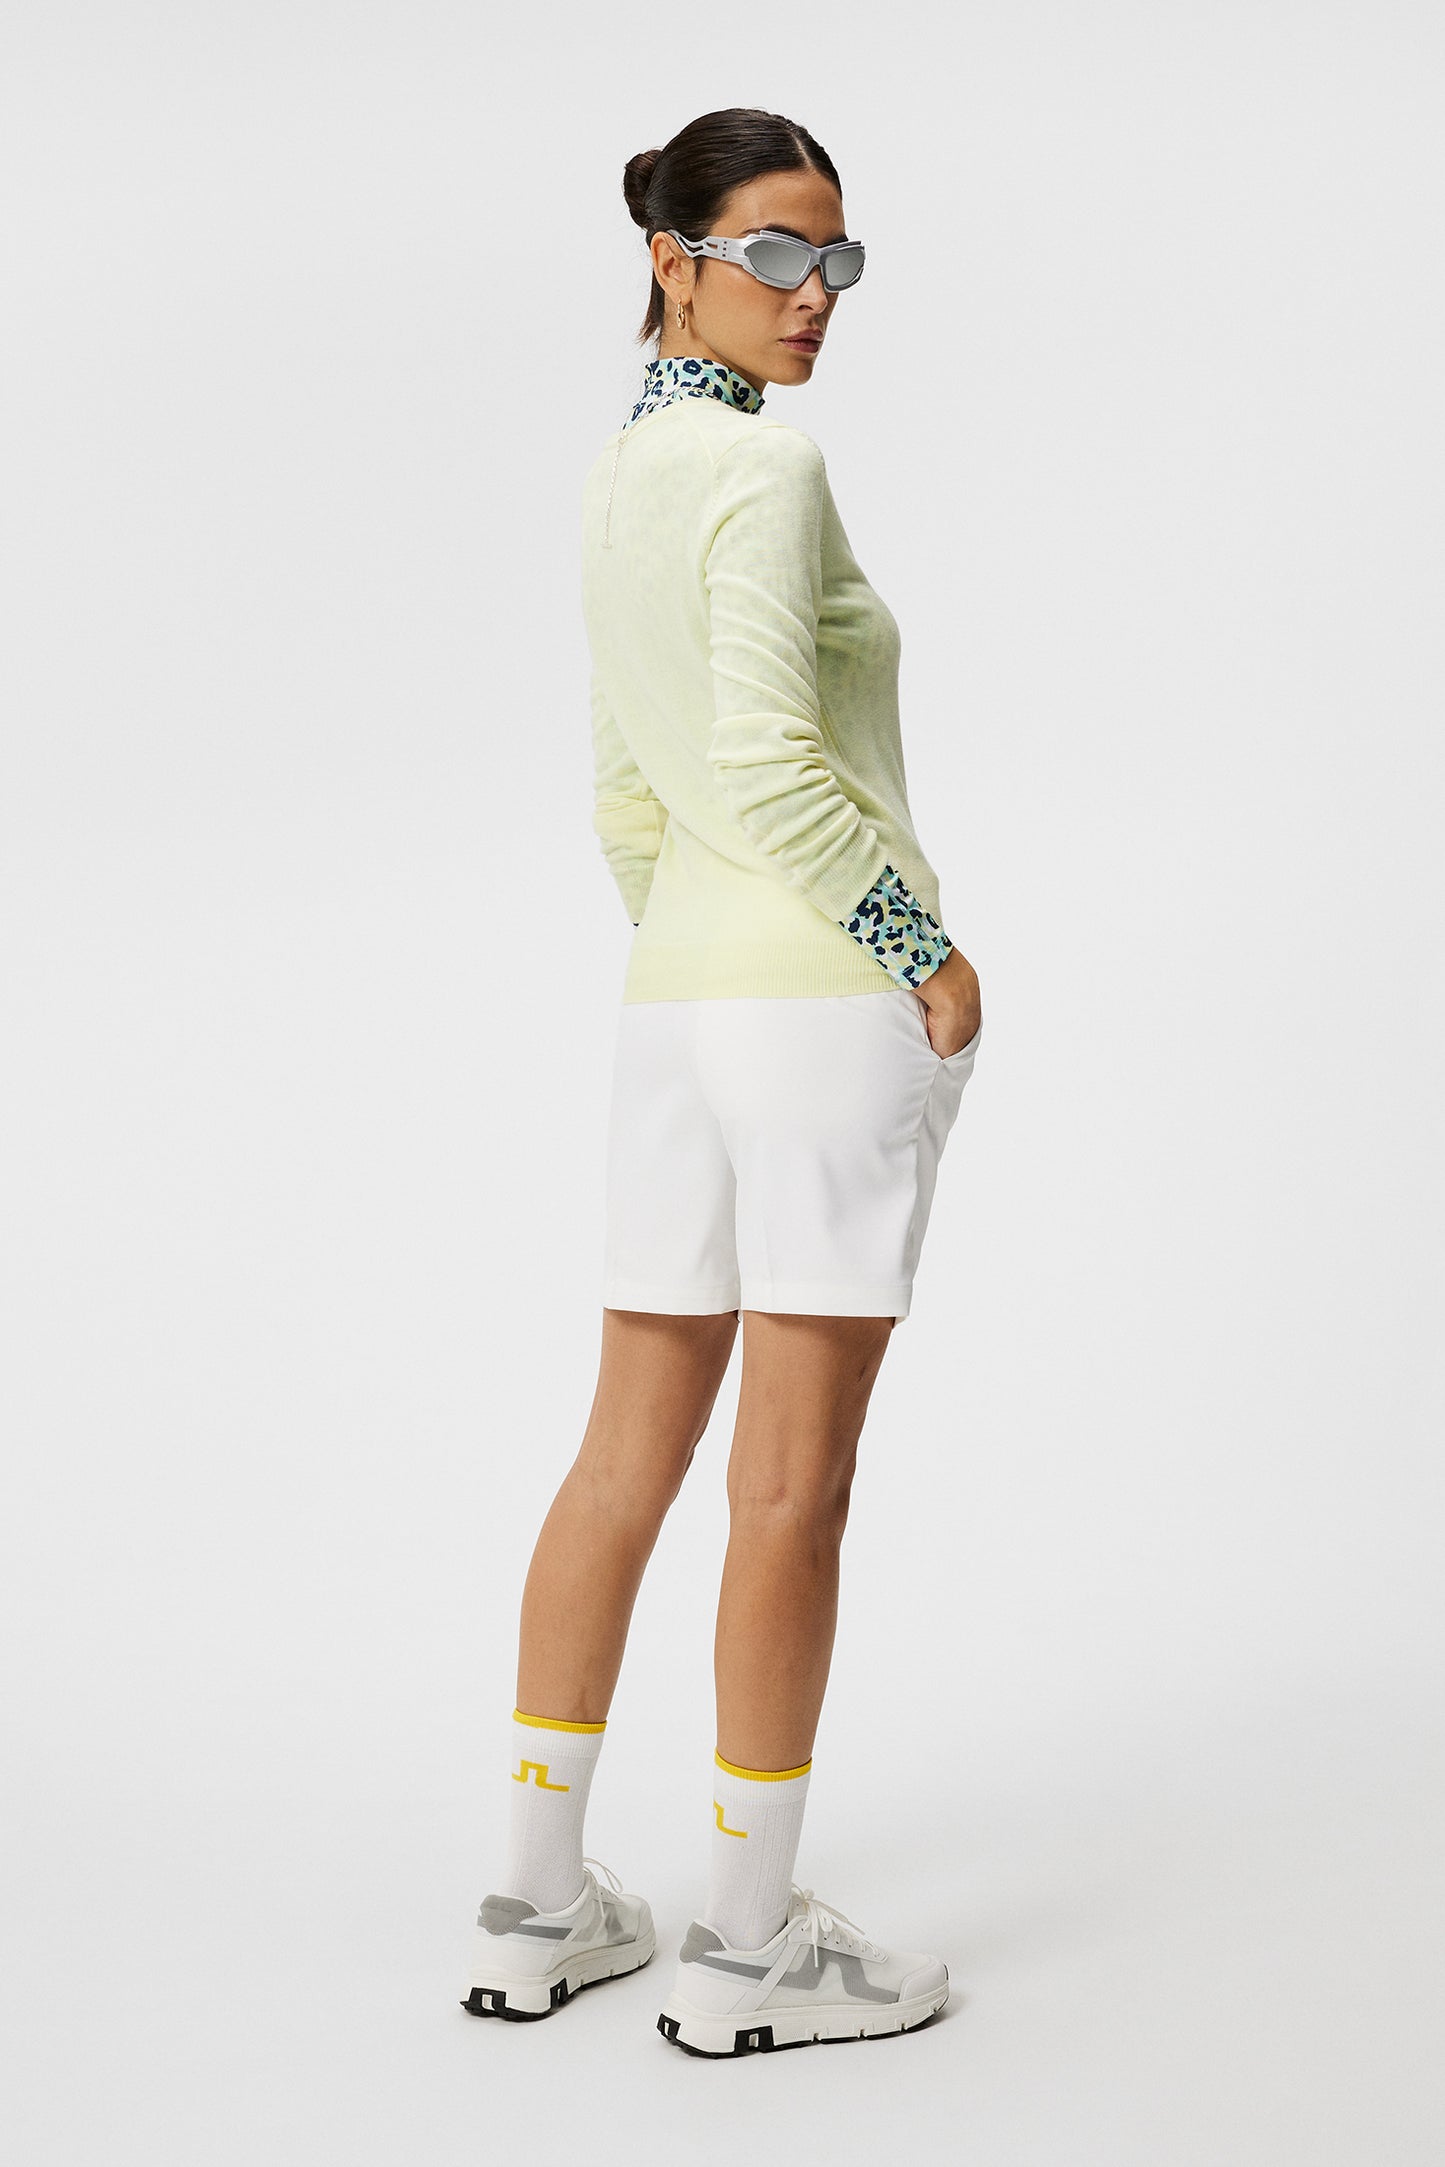 Amaya Knitted Sweater / Wax Yellow